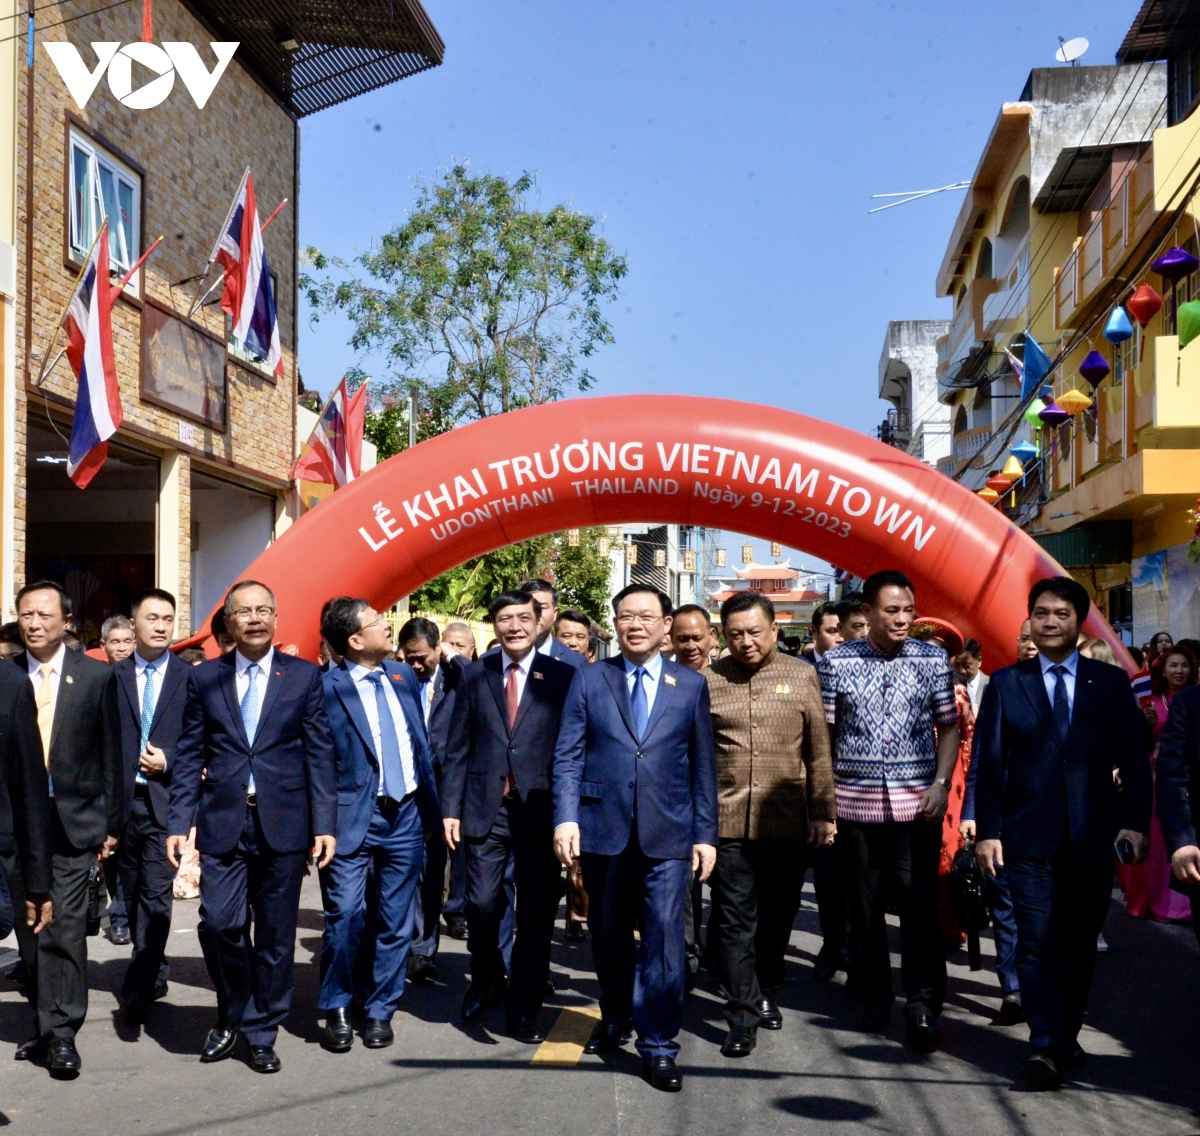 Chủ tịch Quốc hội dự lễ khai trương Phố Việt Nam tại tỉnh Udon Thái Lan 